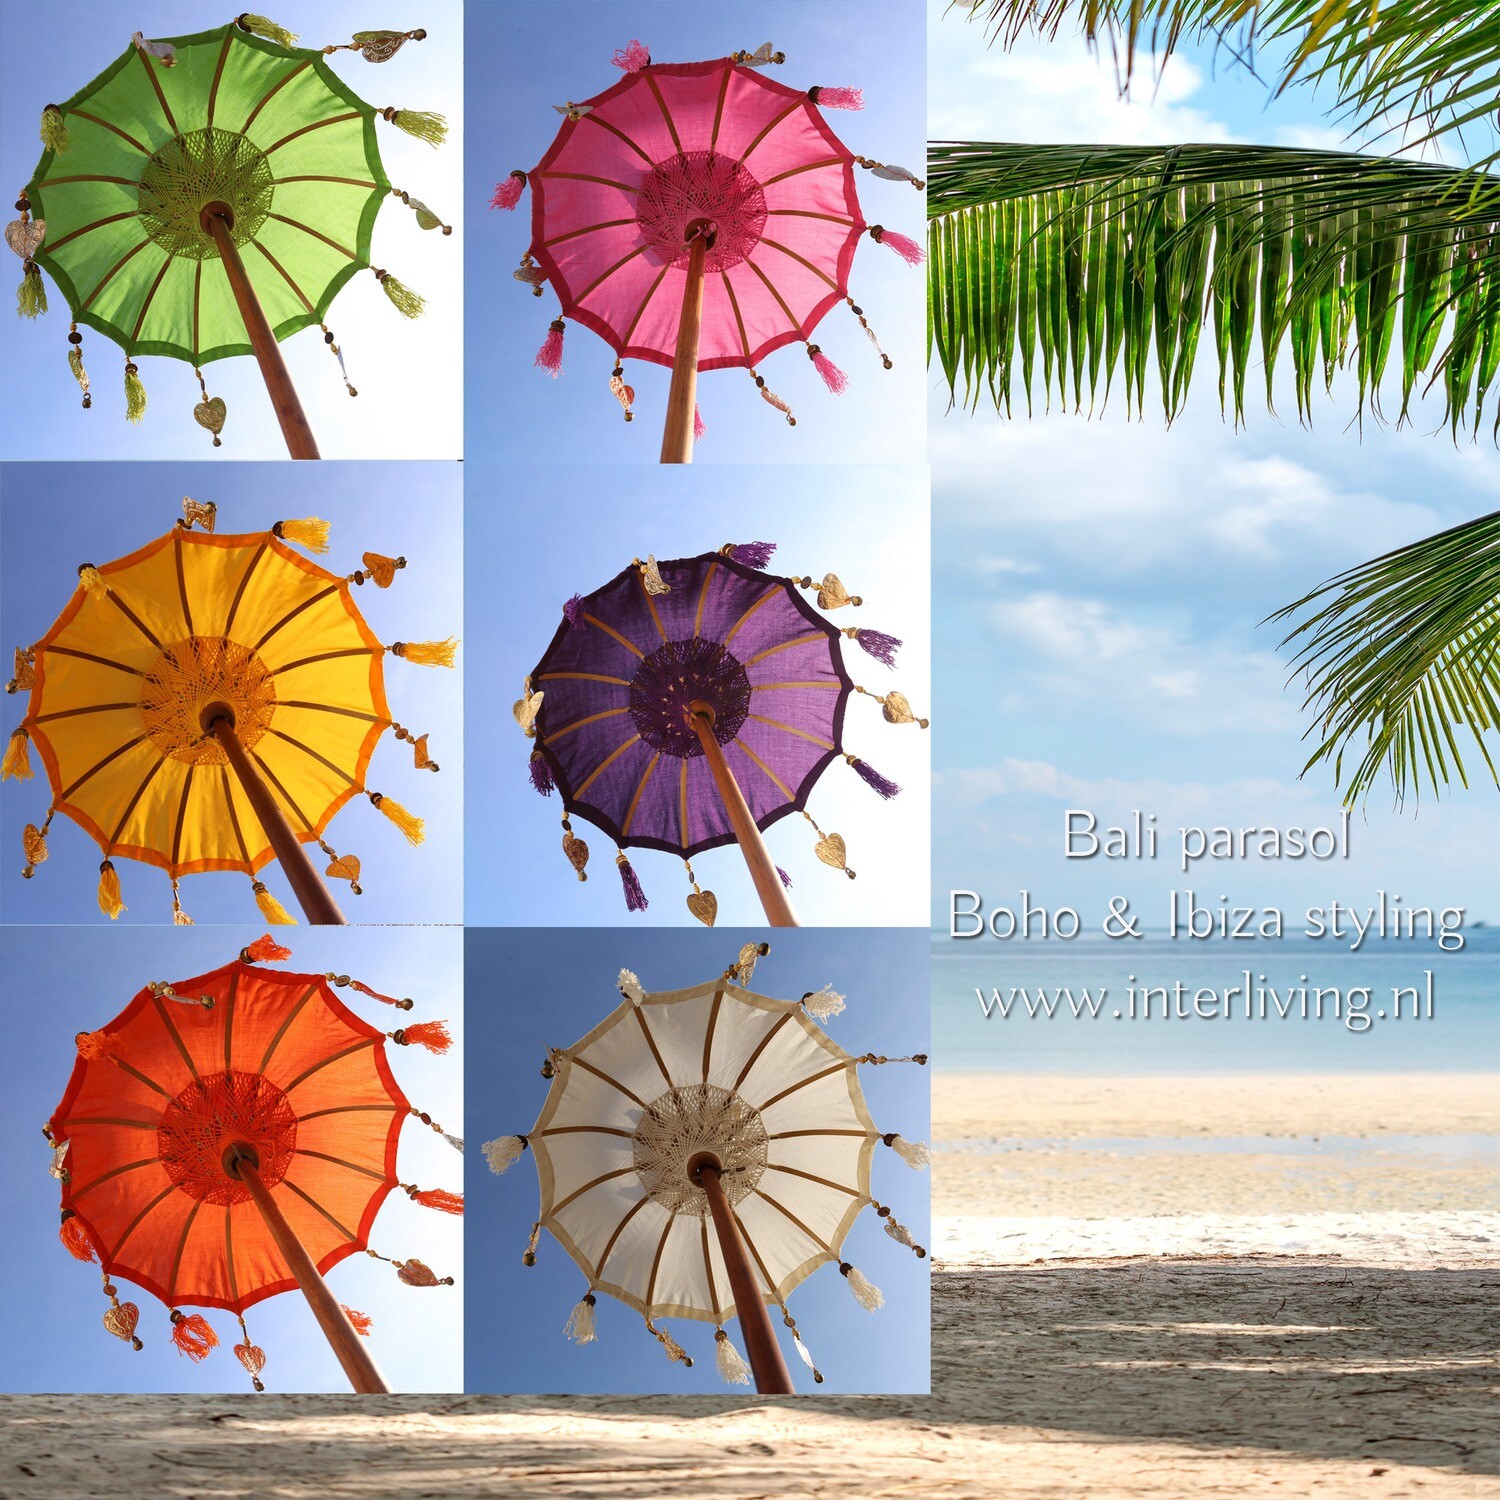 tafelparasol uit Bali 50 cm - Tedung - versierde Balinese parasols met kwastjes en hangers de kleuren wit / geel / groen / / paars en oranje - handgemaakt met teakhout voet